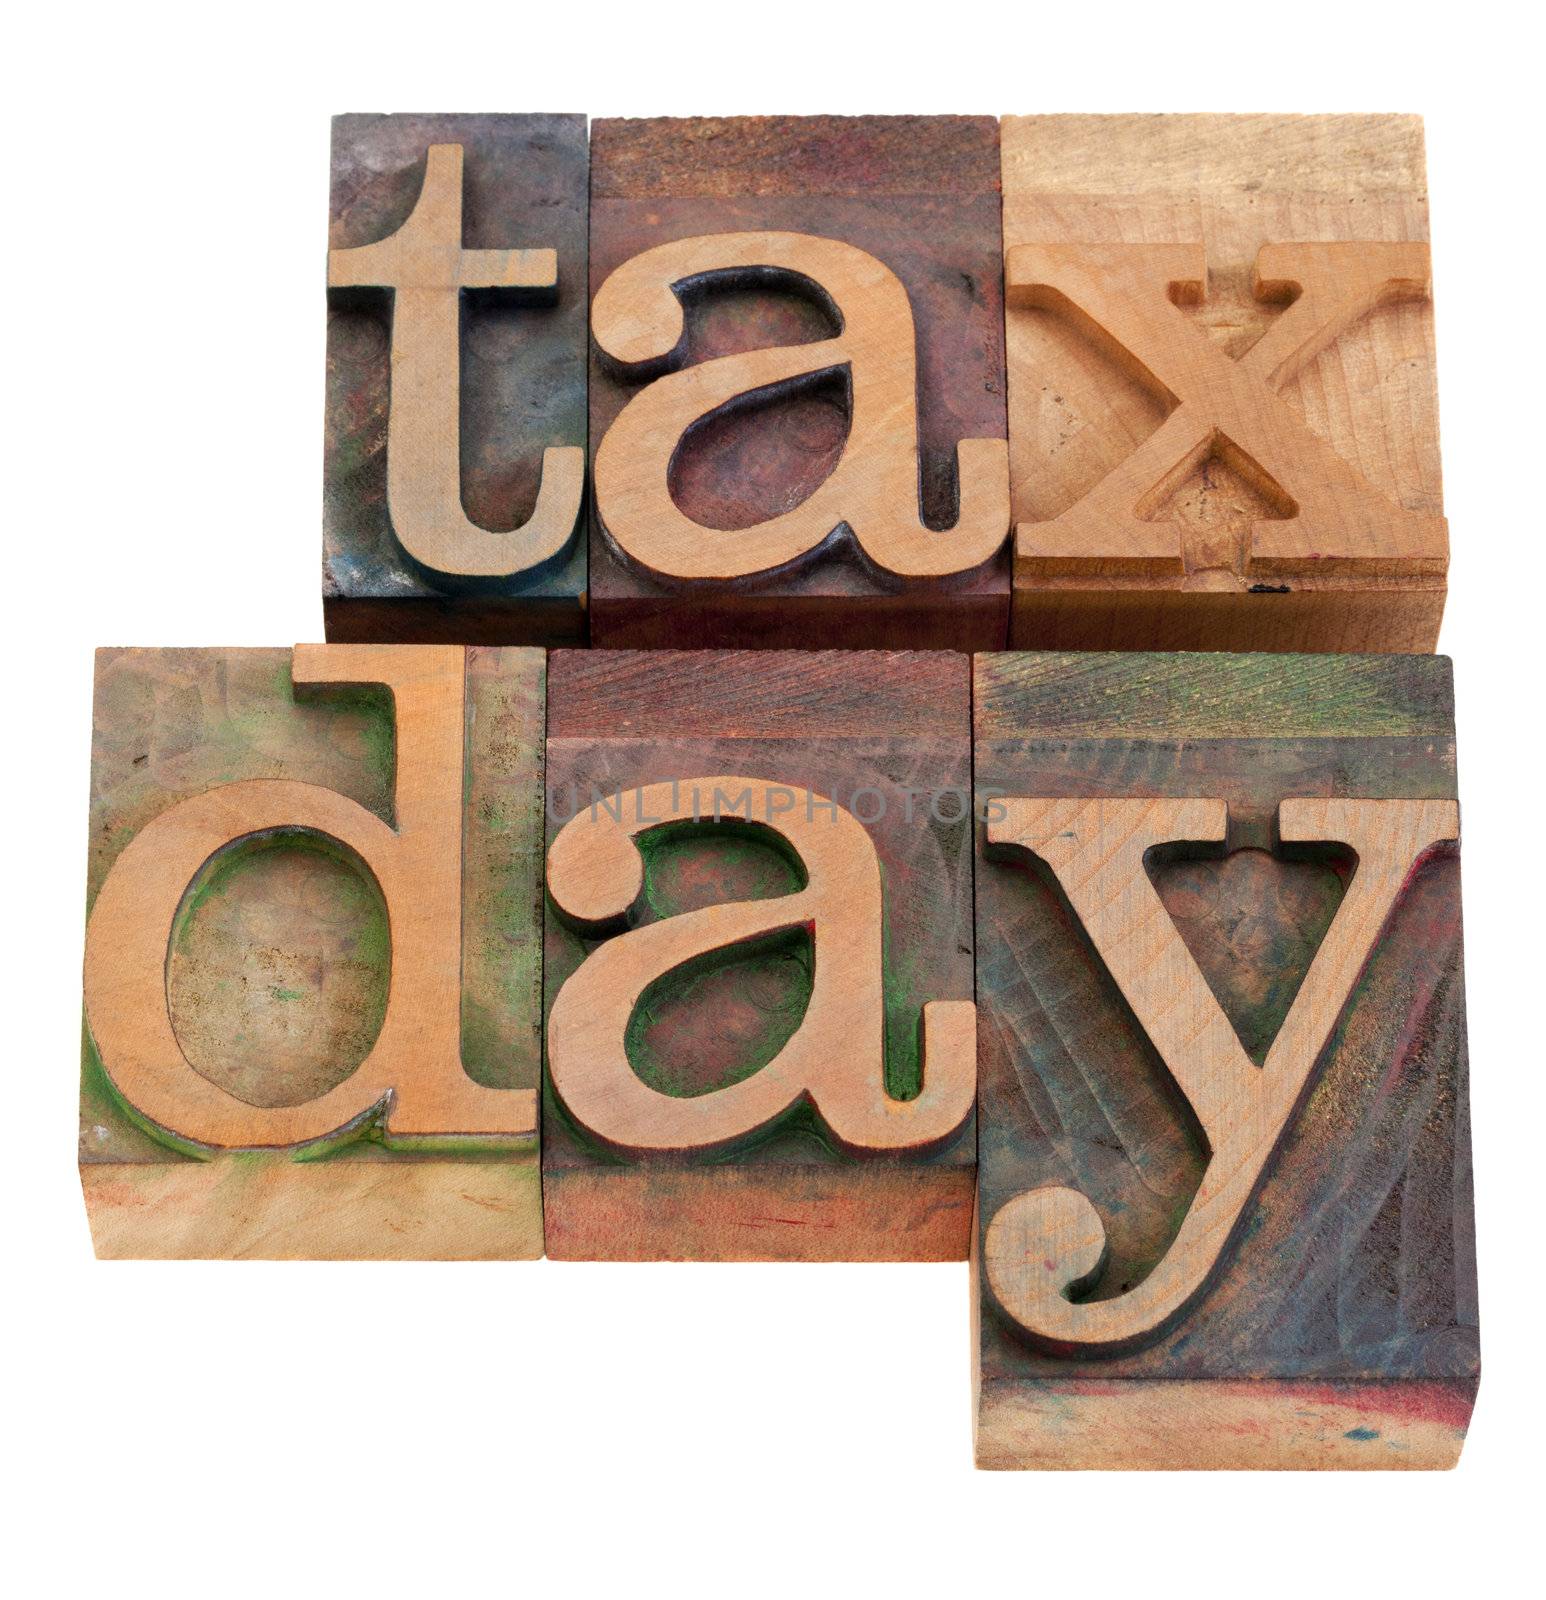 tax day iwords in letterpress type by PixelsAway